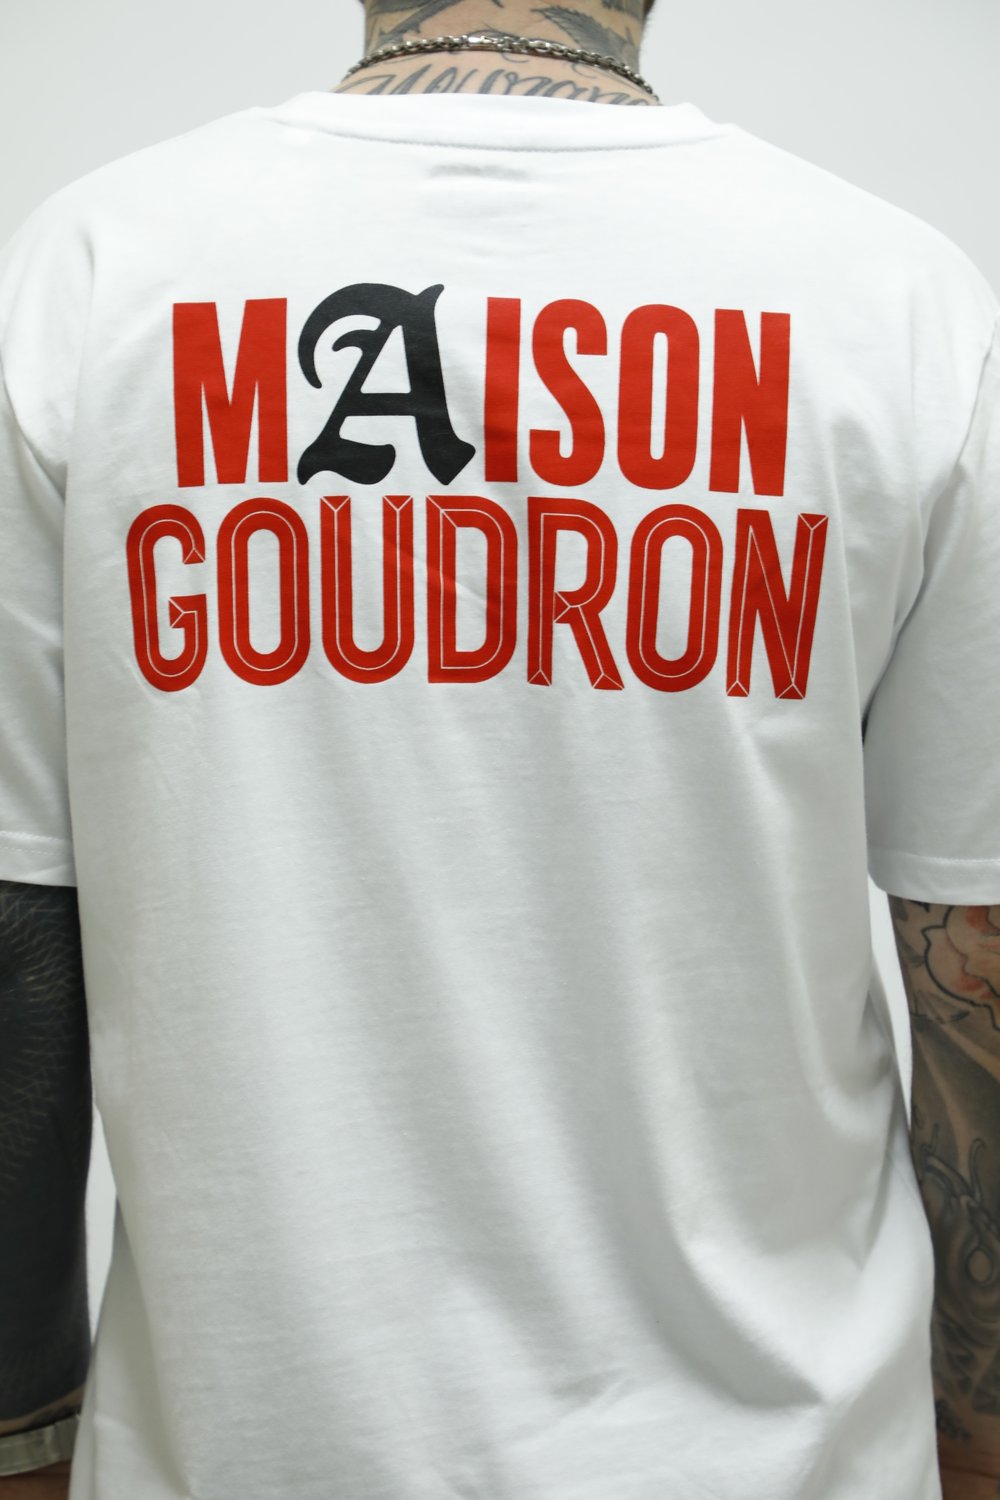 MAISON MERE X GOUDRON MAISON GOUDRON TEE